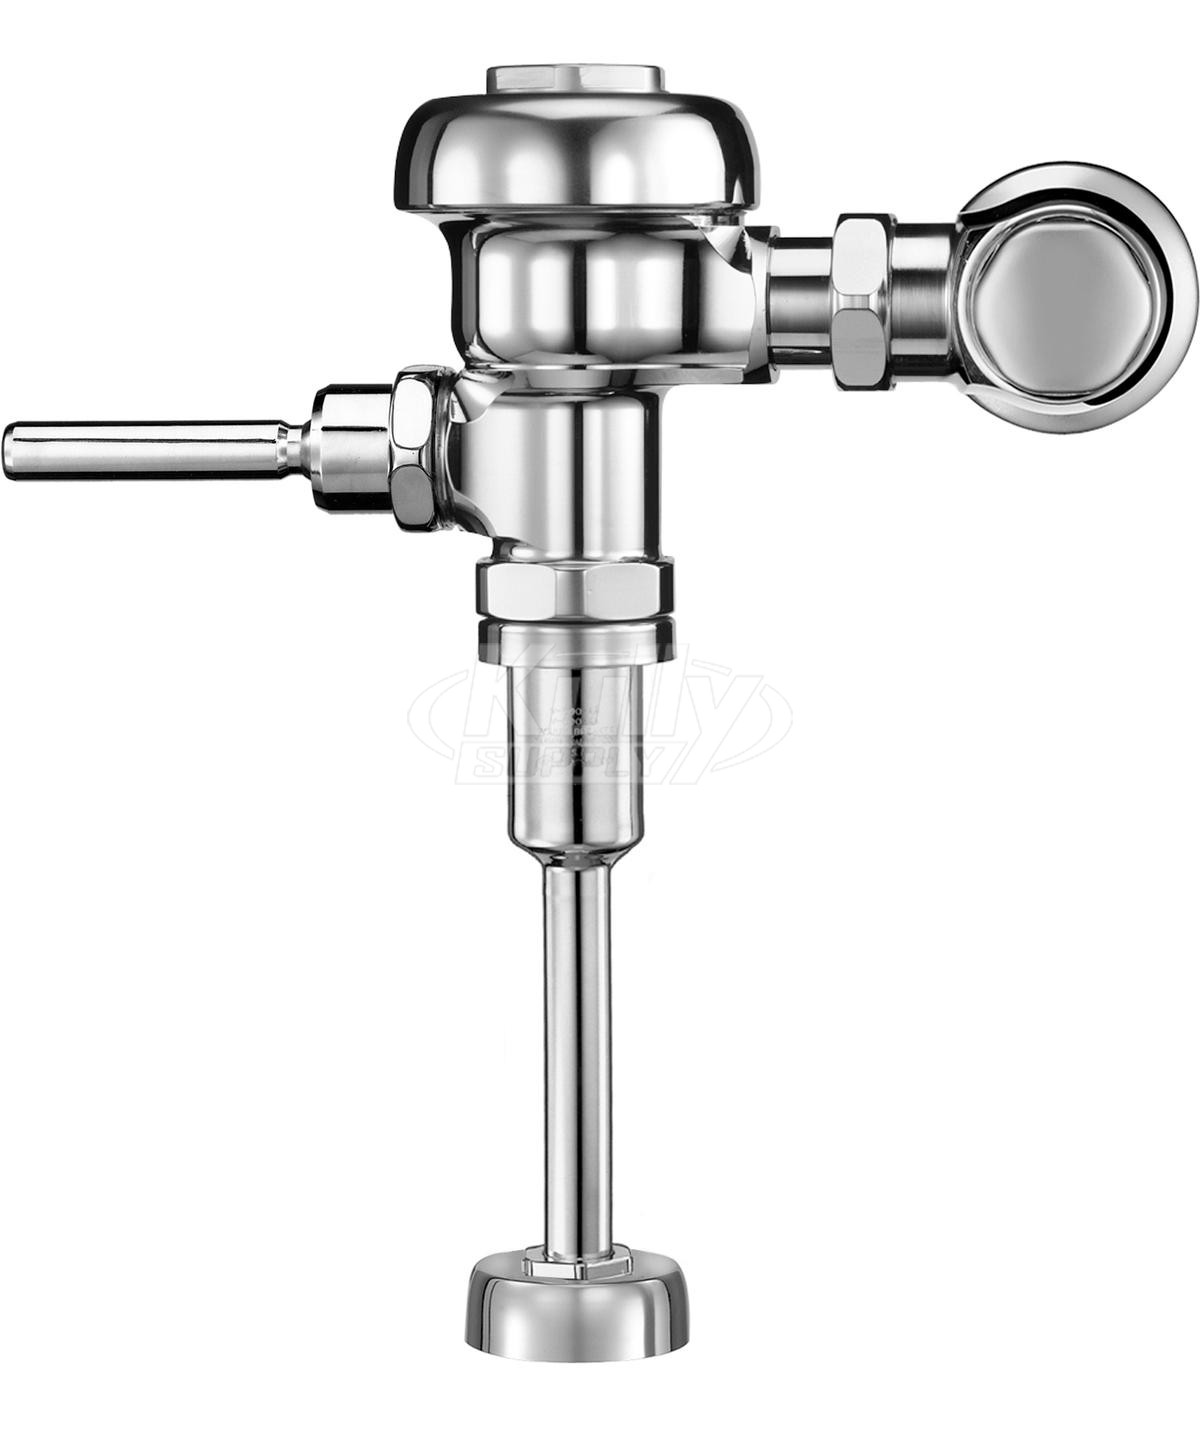 Sloan 186-1 Urinal 1.0 GPF Flushometer